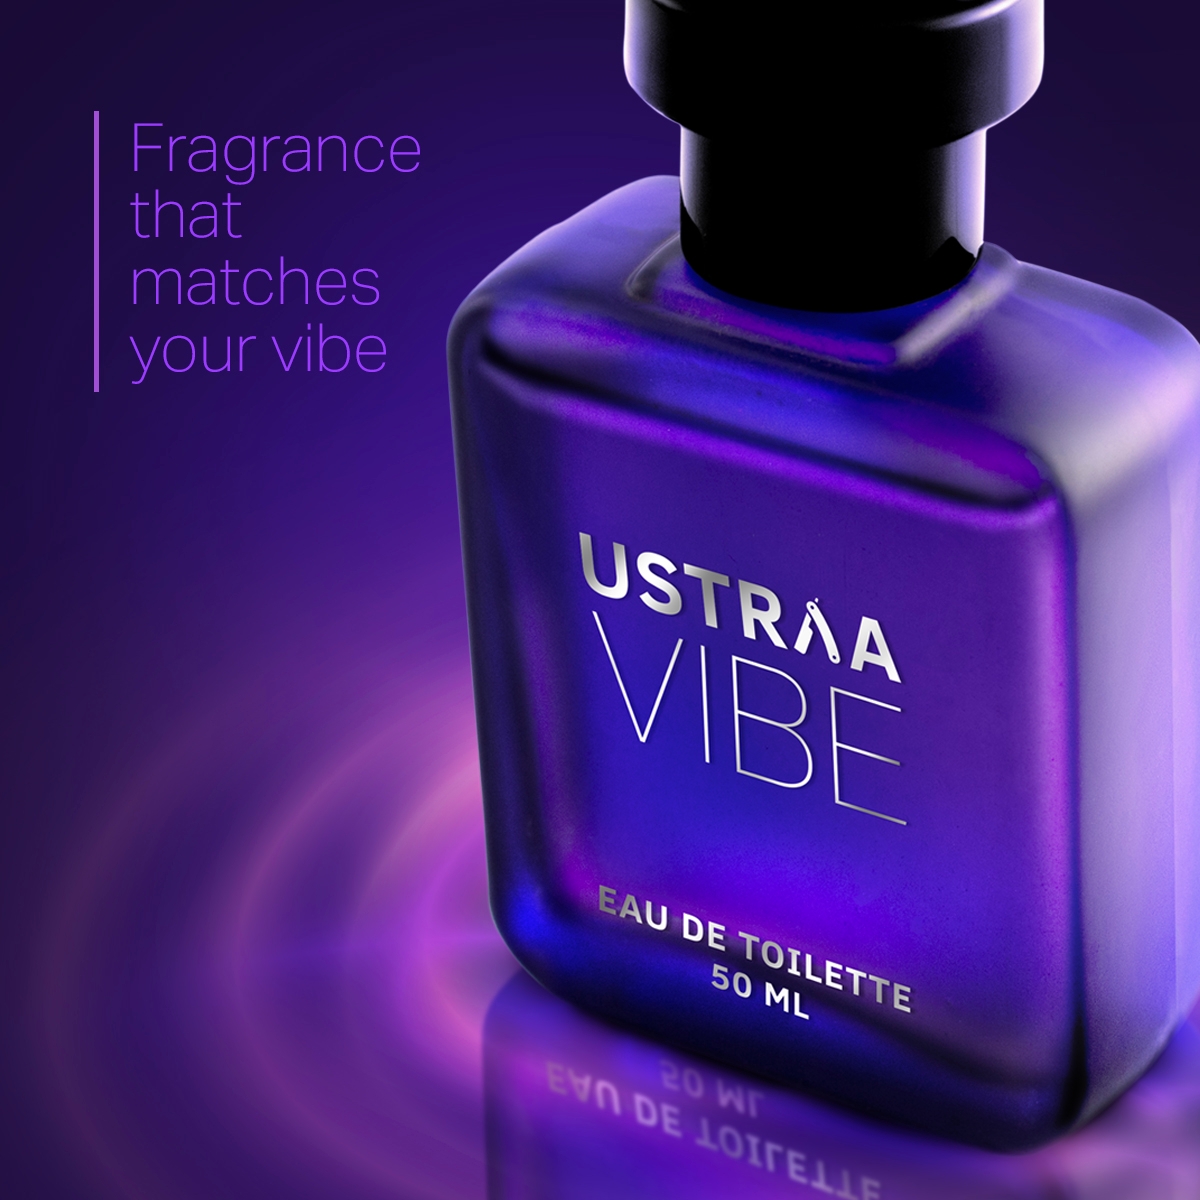 Ustraa | Ustraa Vibe EDT 50ml - Perfume for Men 2